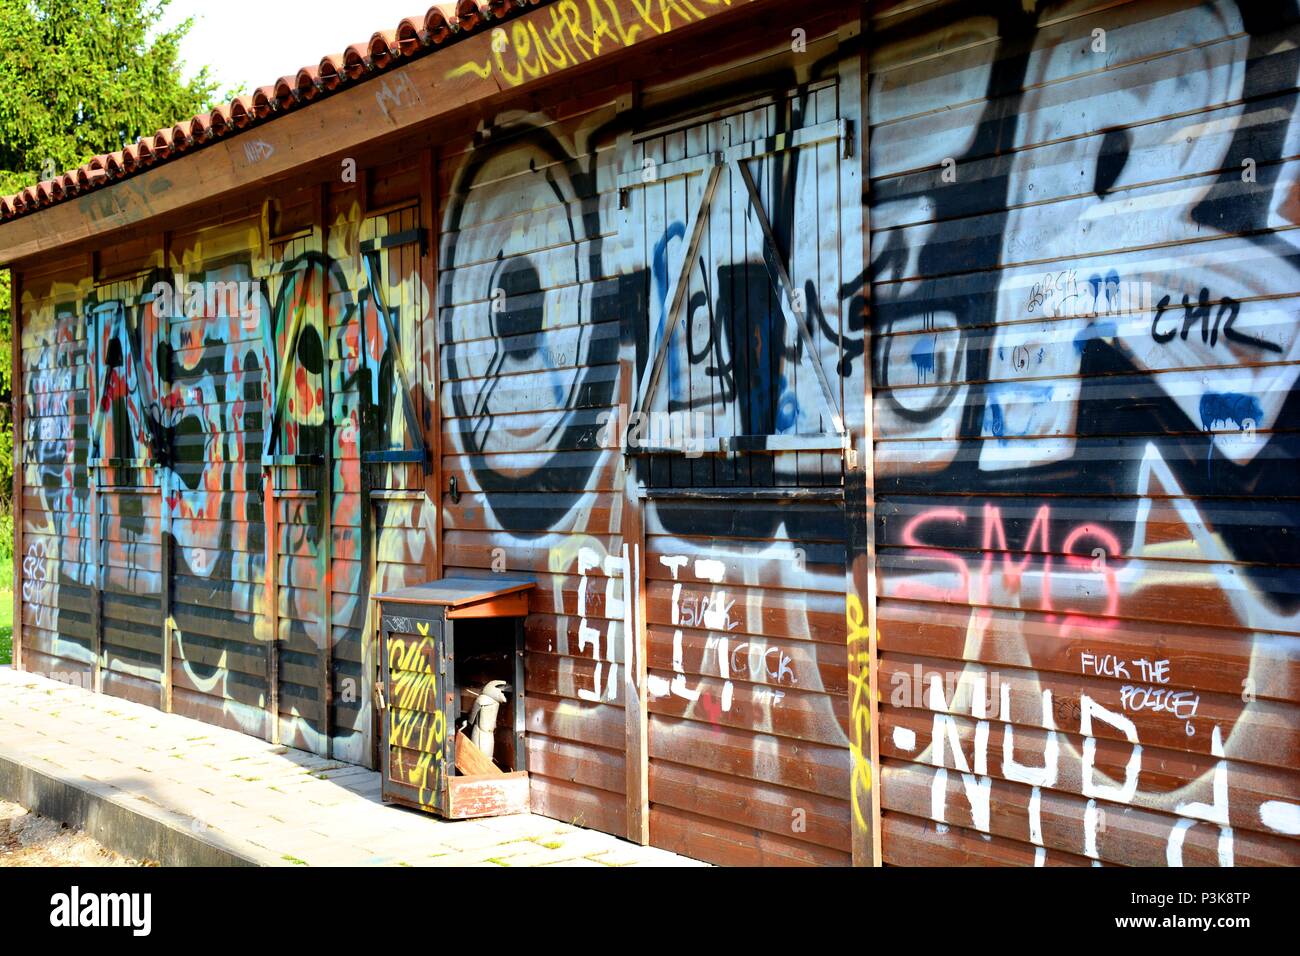 grafitis on a house, graffiti, graffities, grafiti Stock Photo